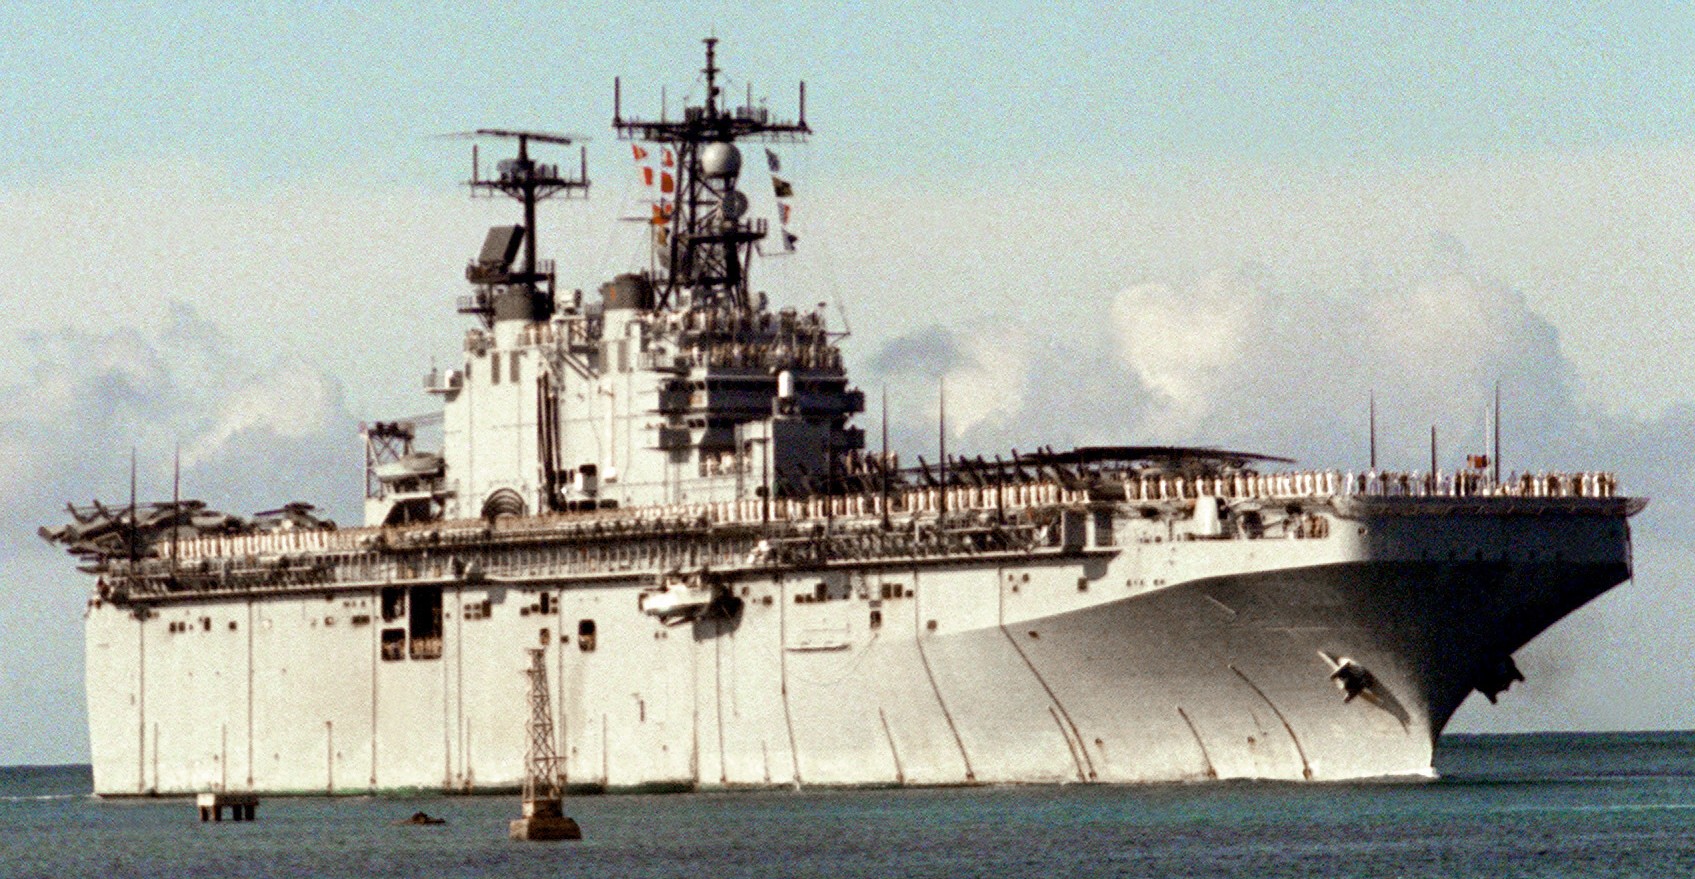 lha-1 uss tarawa amphibious assault ship us navy 80